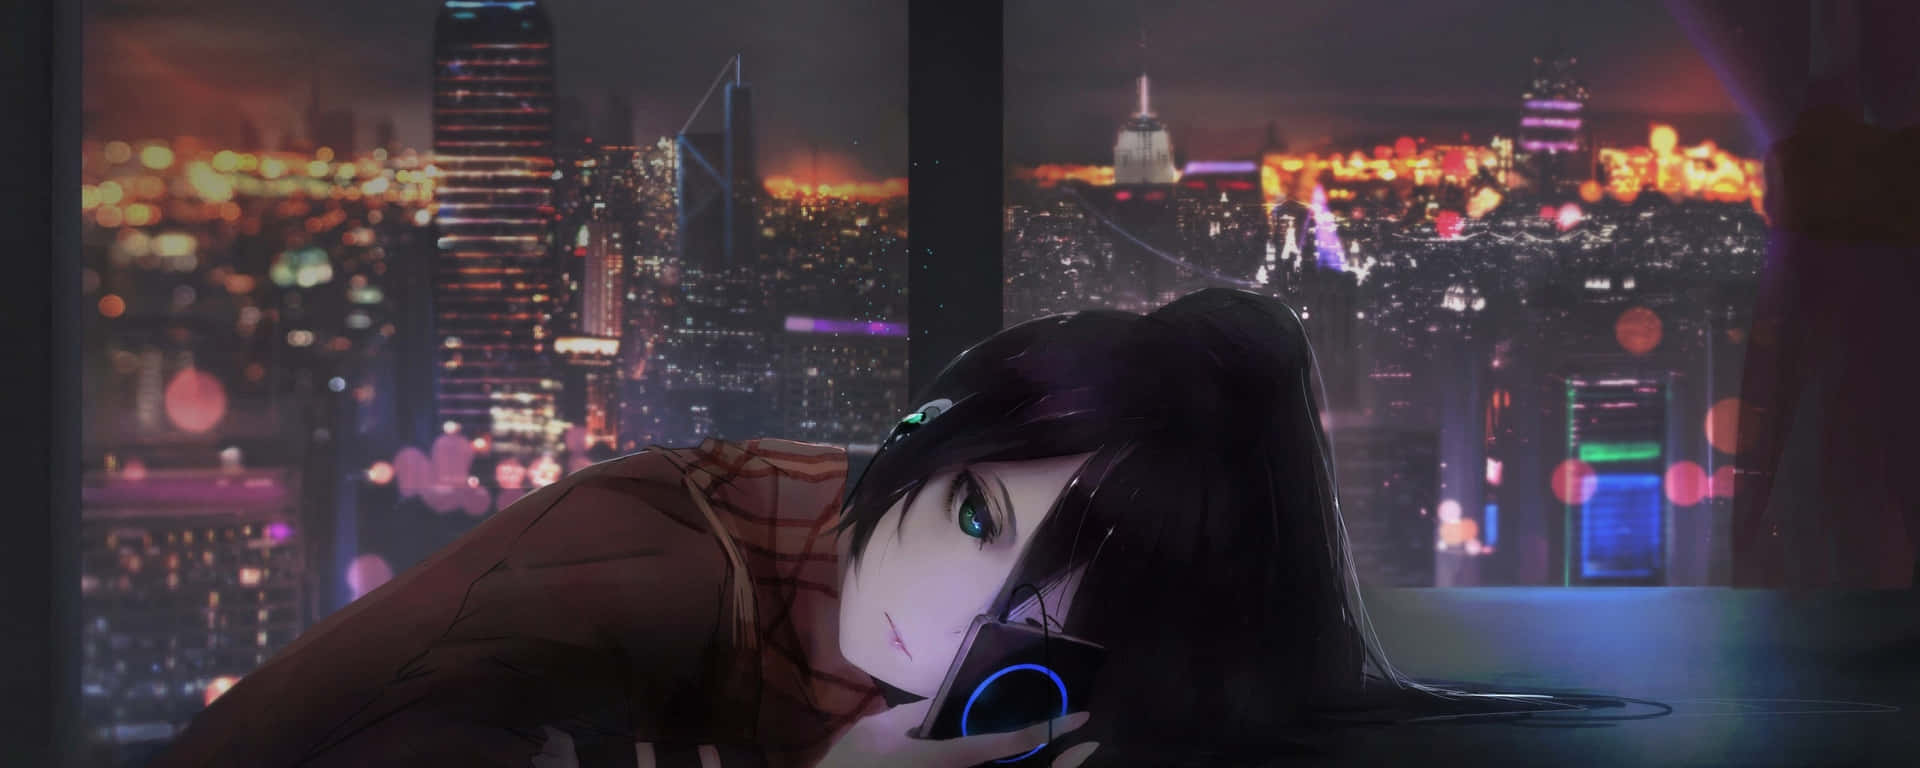 Dualebildschirm Anime Mädchen Traurig Allein Wallpaper